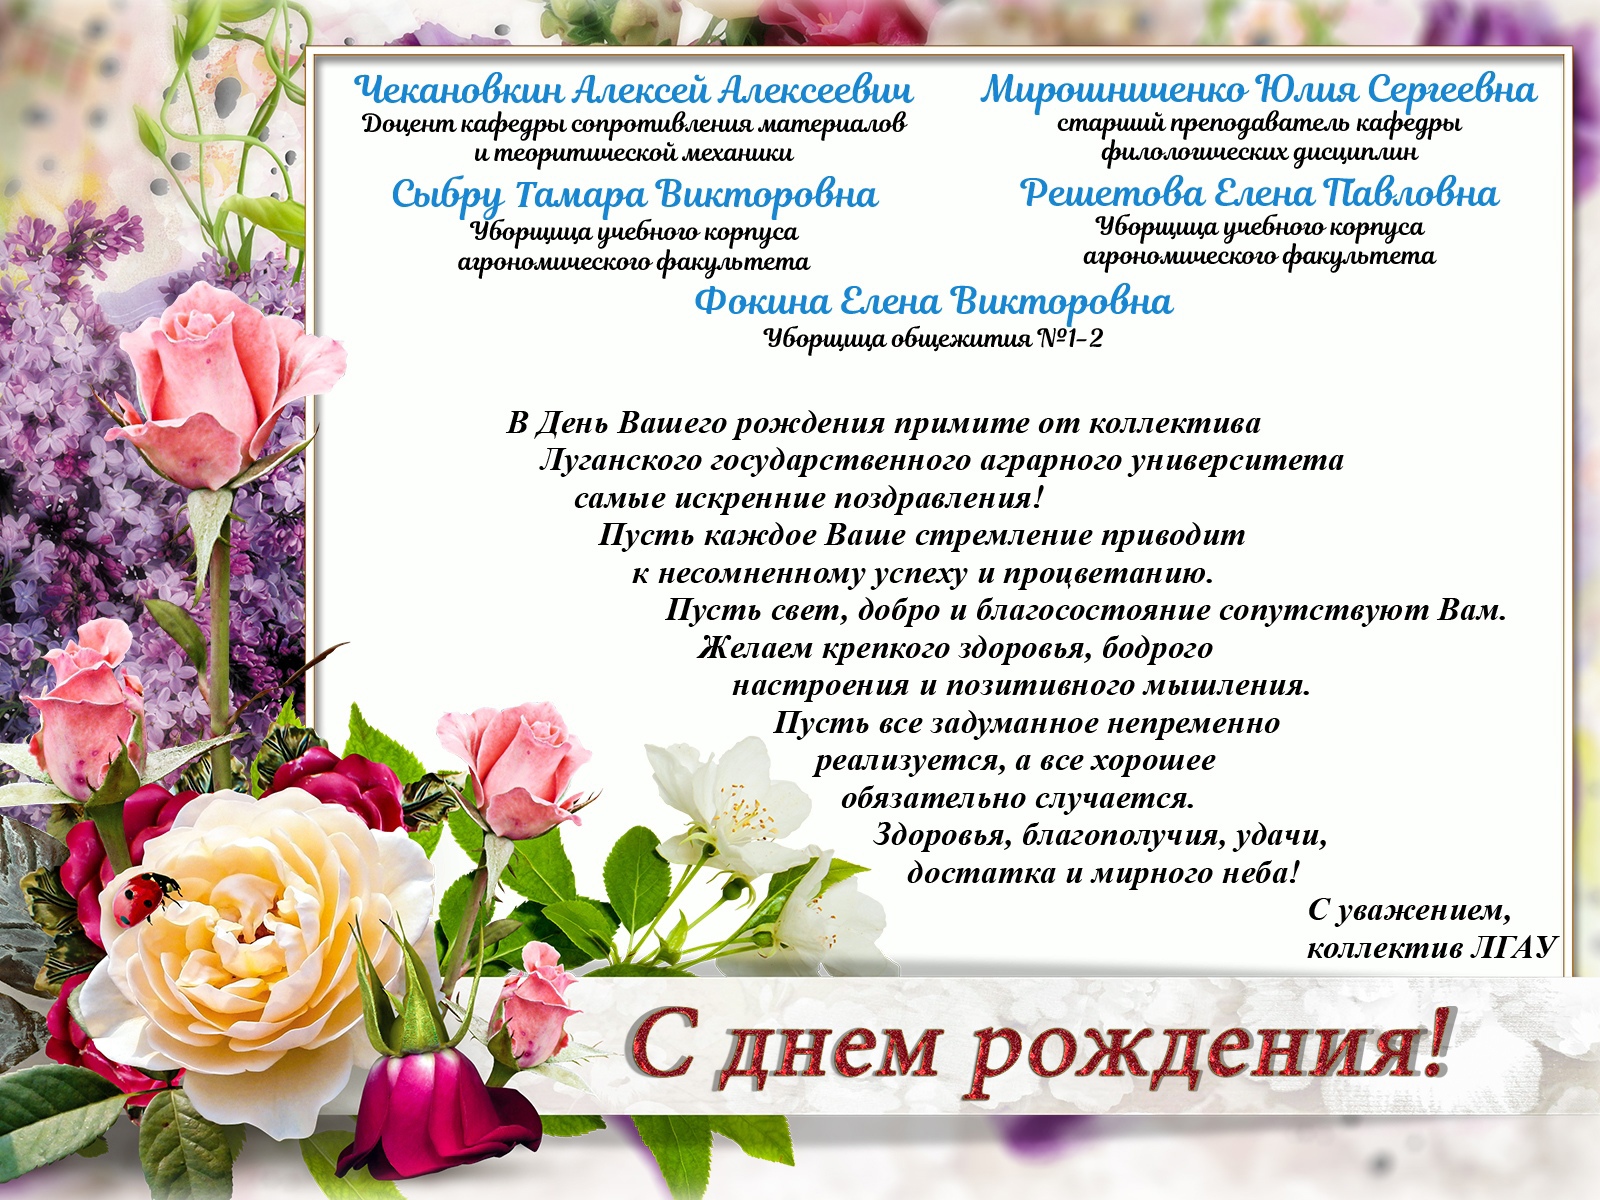 Баталину Ольгу Юрьевну поздравили с днем рождения